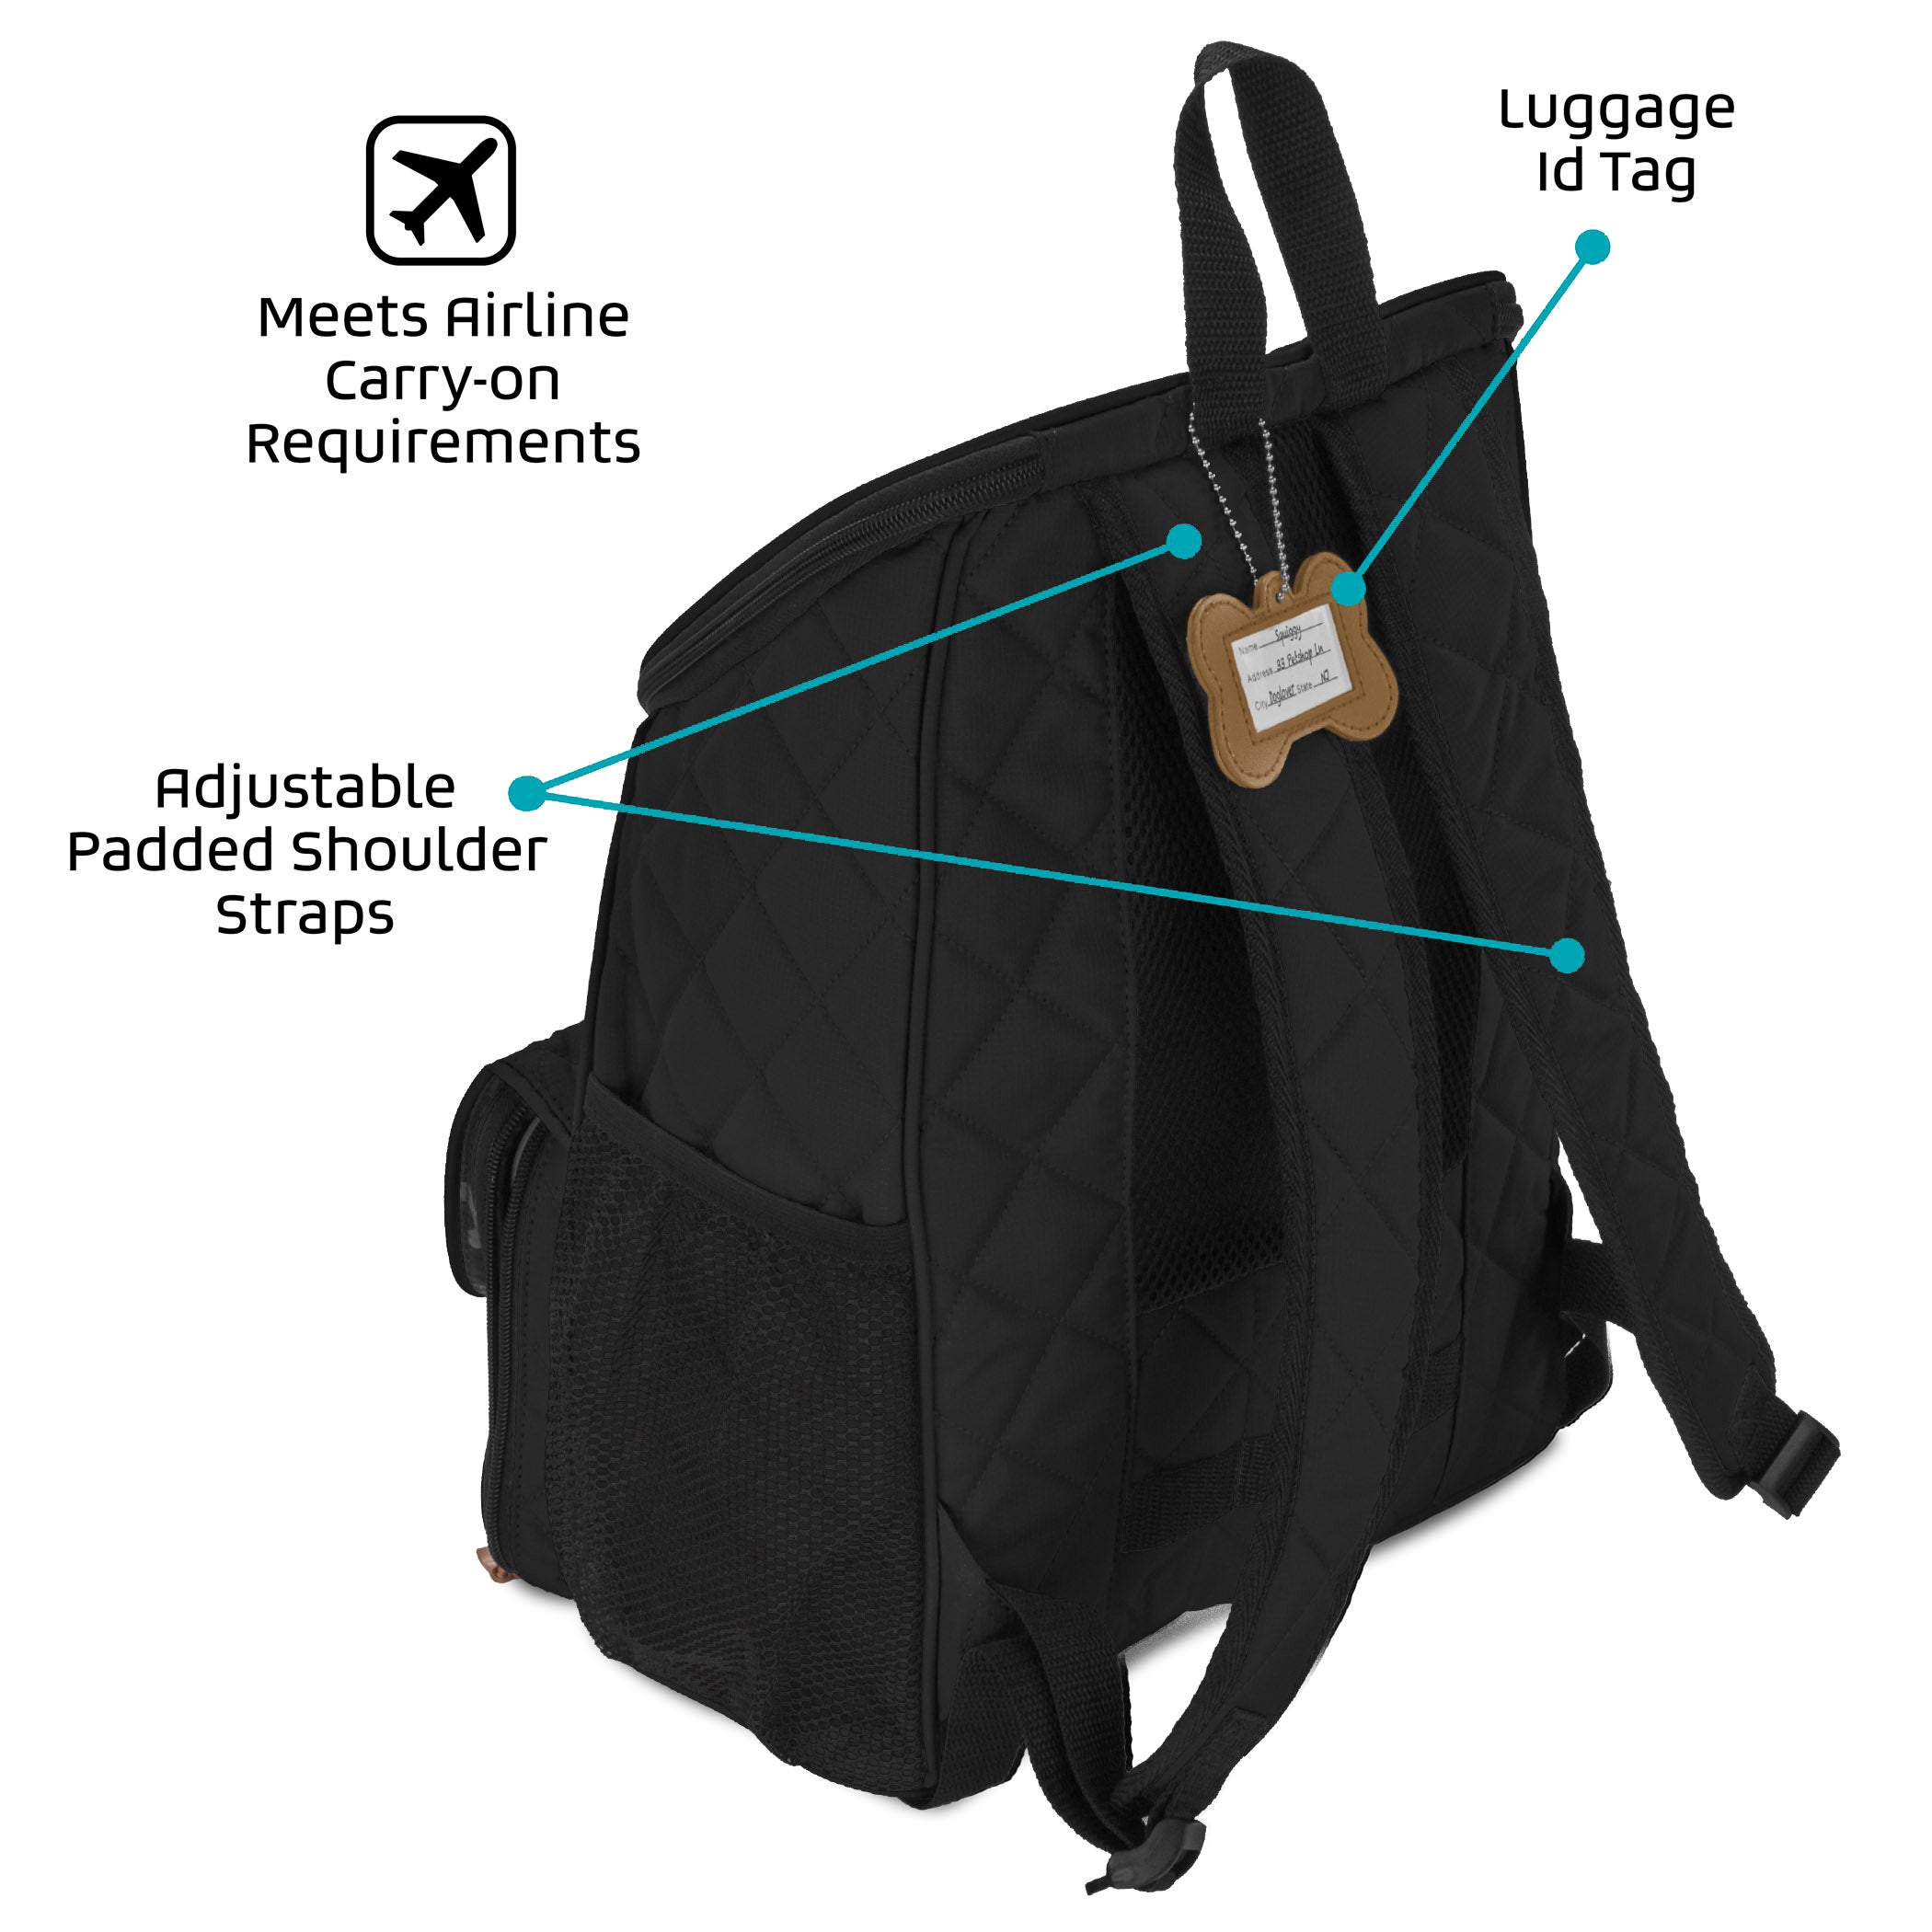 Bundle: ODG Week Away Bag TM (Med/Lg Dogs) (Black) and ODG Weekender Backpack TM (Black)